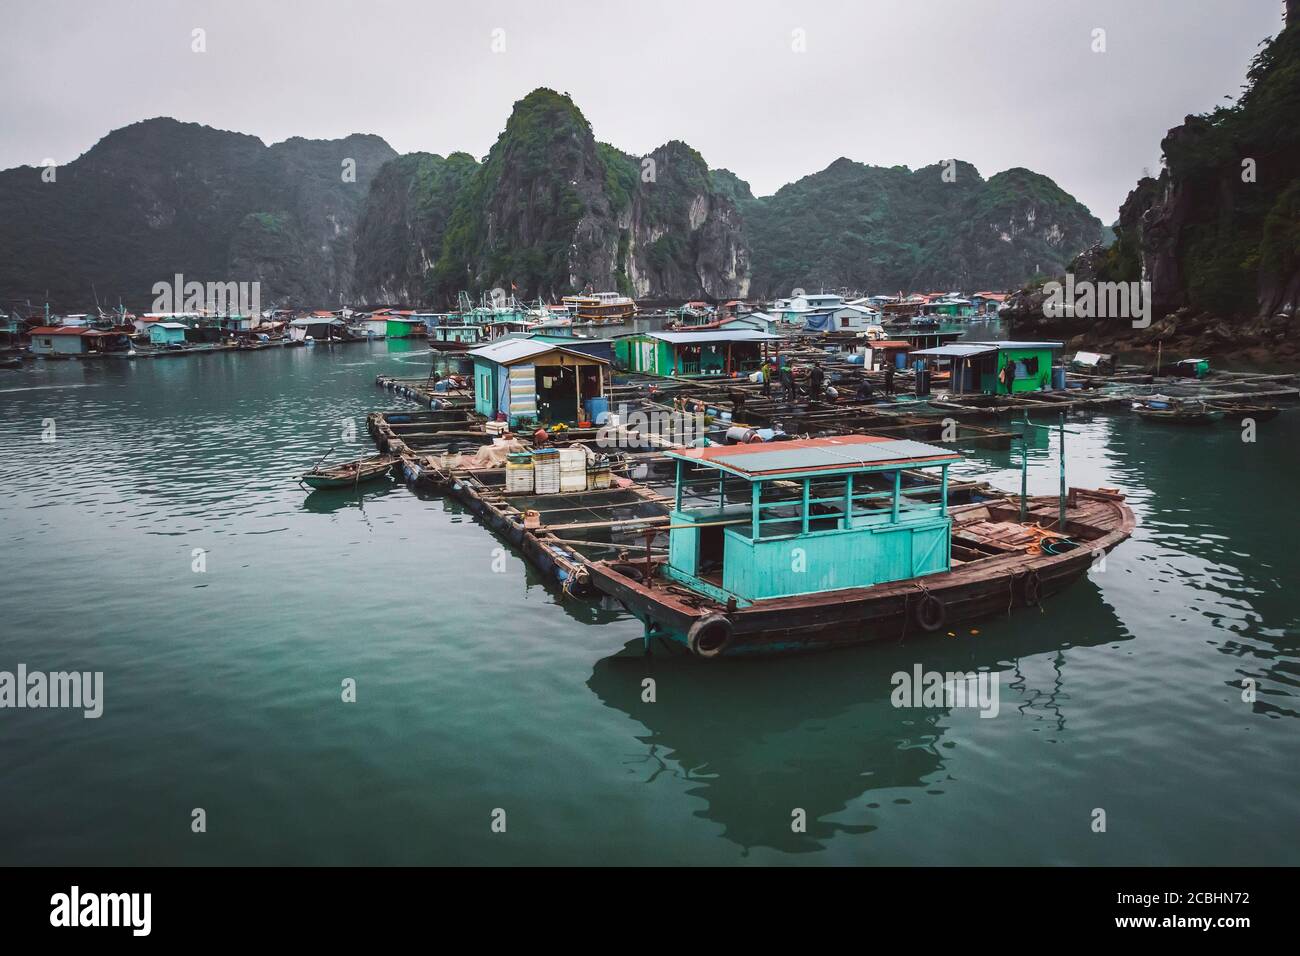 un village de pêcheurs flottant dans la baie de ha long, au nord du vietnam Banque D'Images